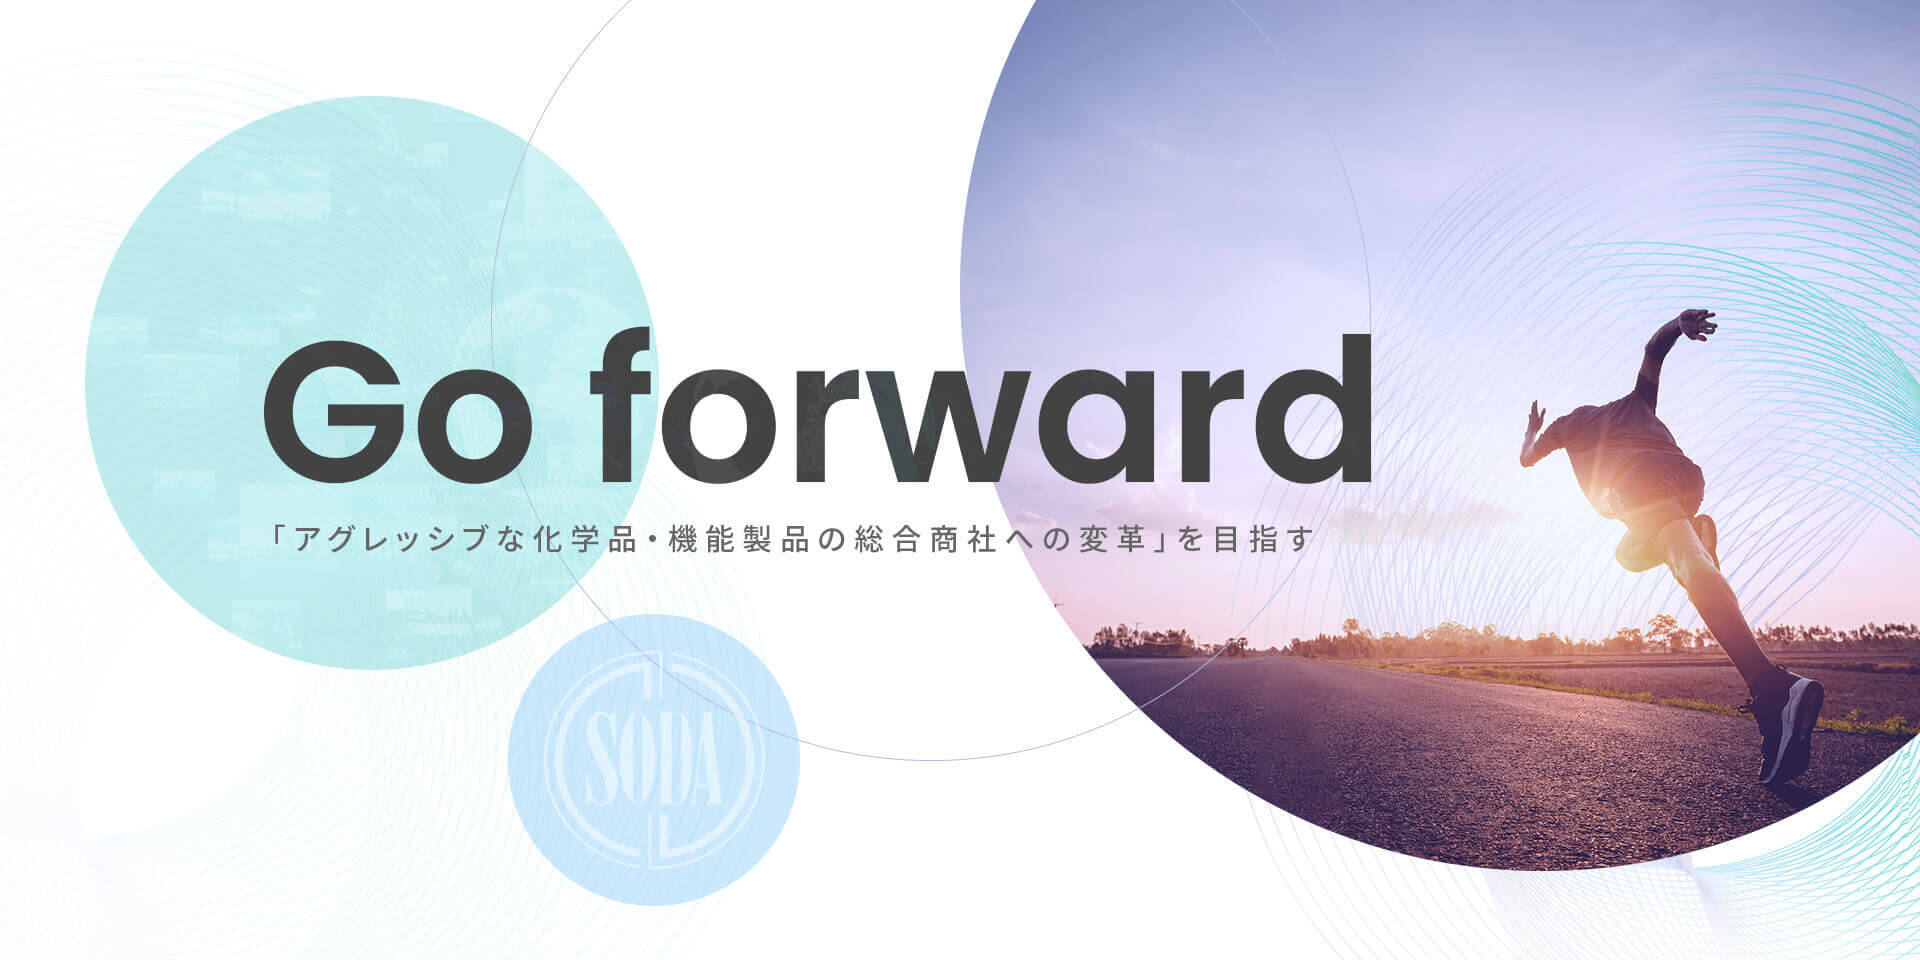 Go forward